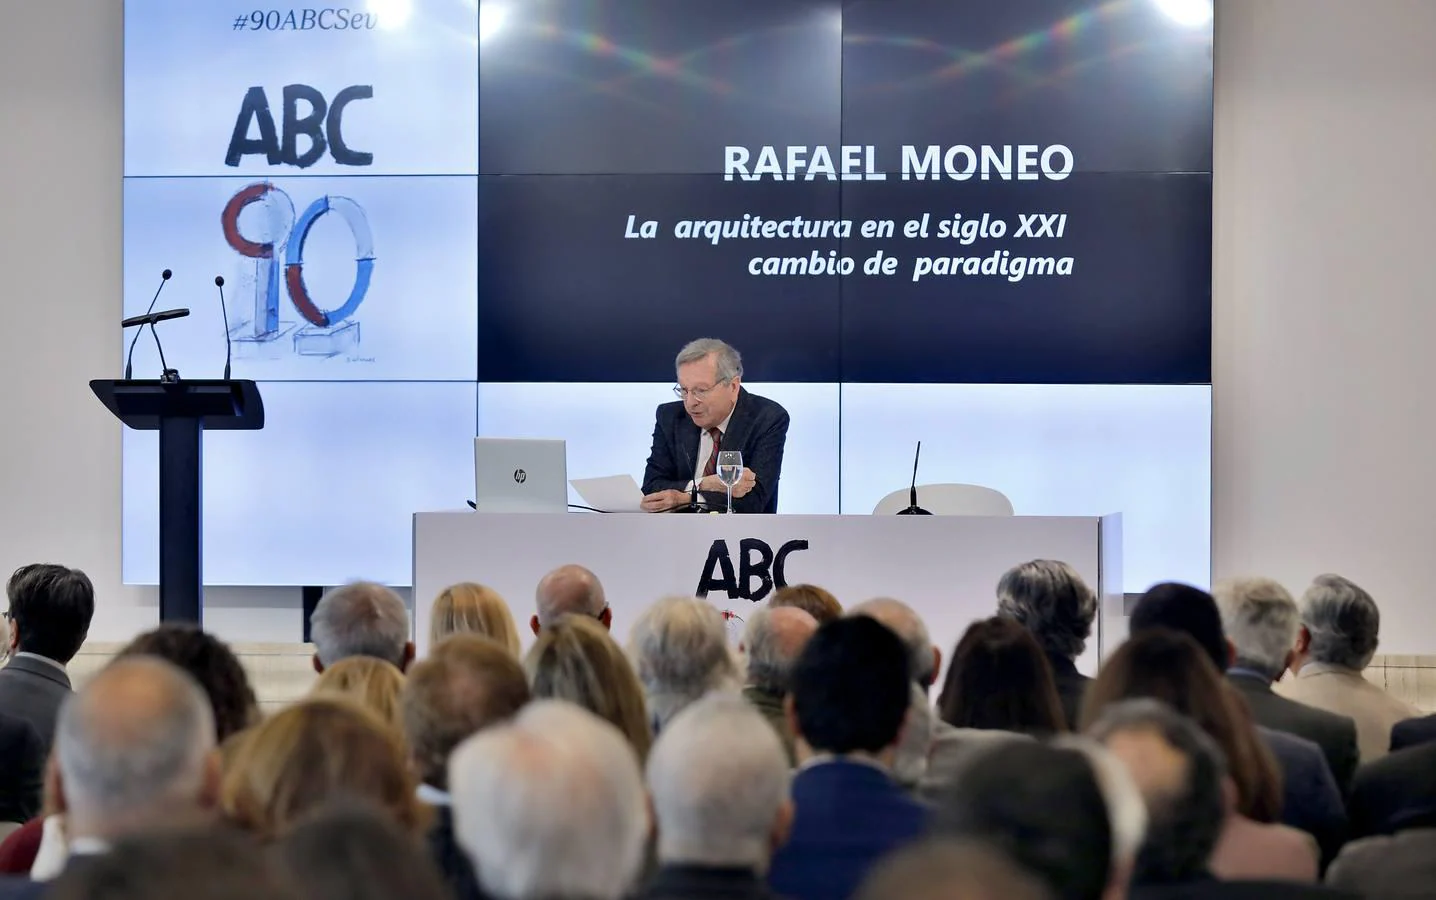 Conferencia de Rafael Moneo en la Casa de ABC de Sevilla